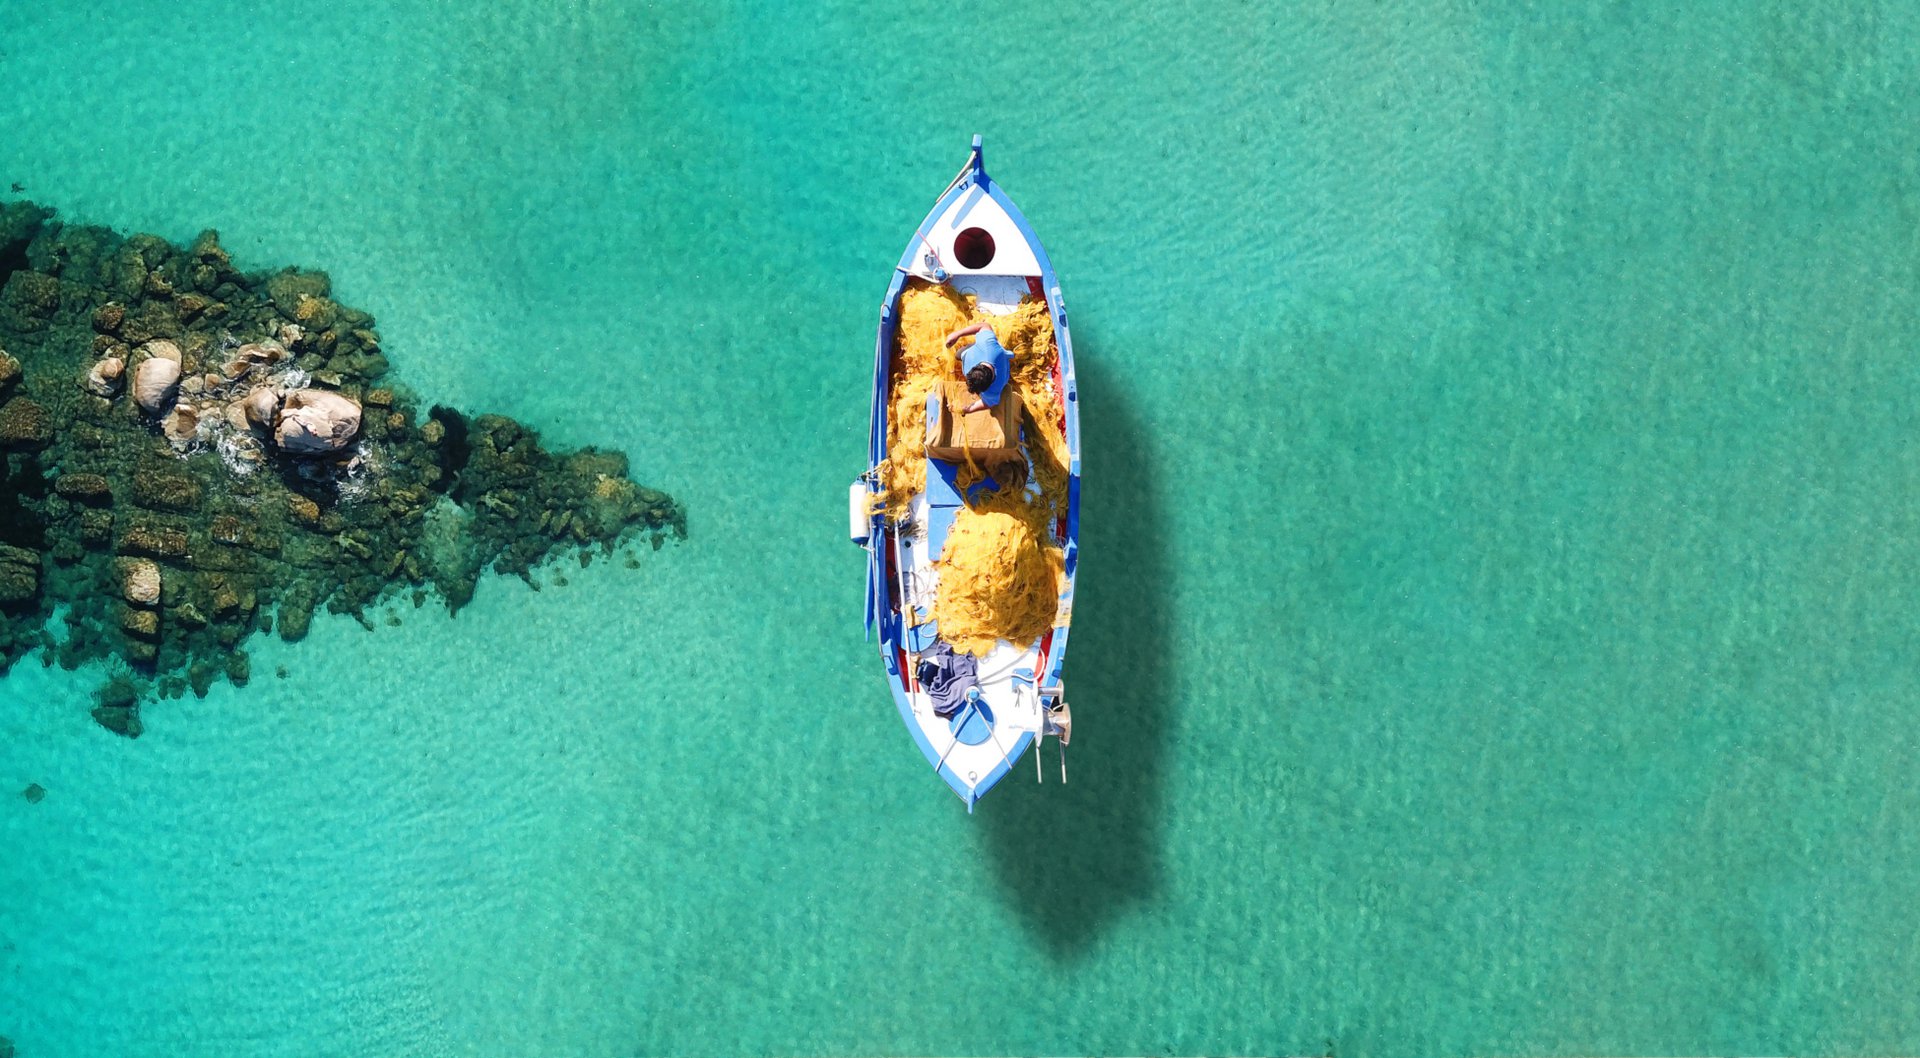 Γαλαζοπράσινα νερά, αίσθηση Καραϊβικής και νορμάλ τιμές για κράτηση τον 15αυγουστο: Αυτό το νησί είναι η καλύτερη επιλογή